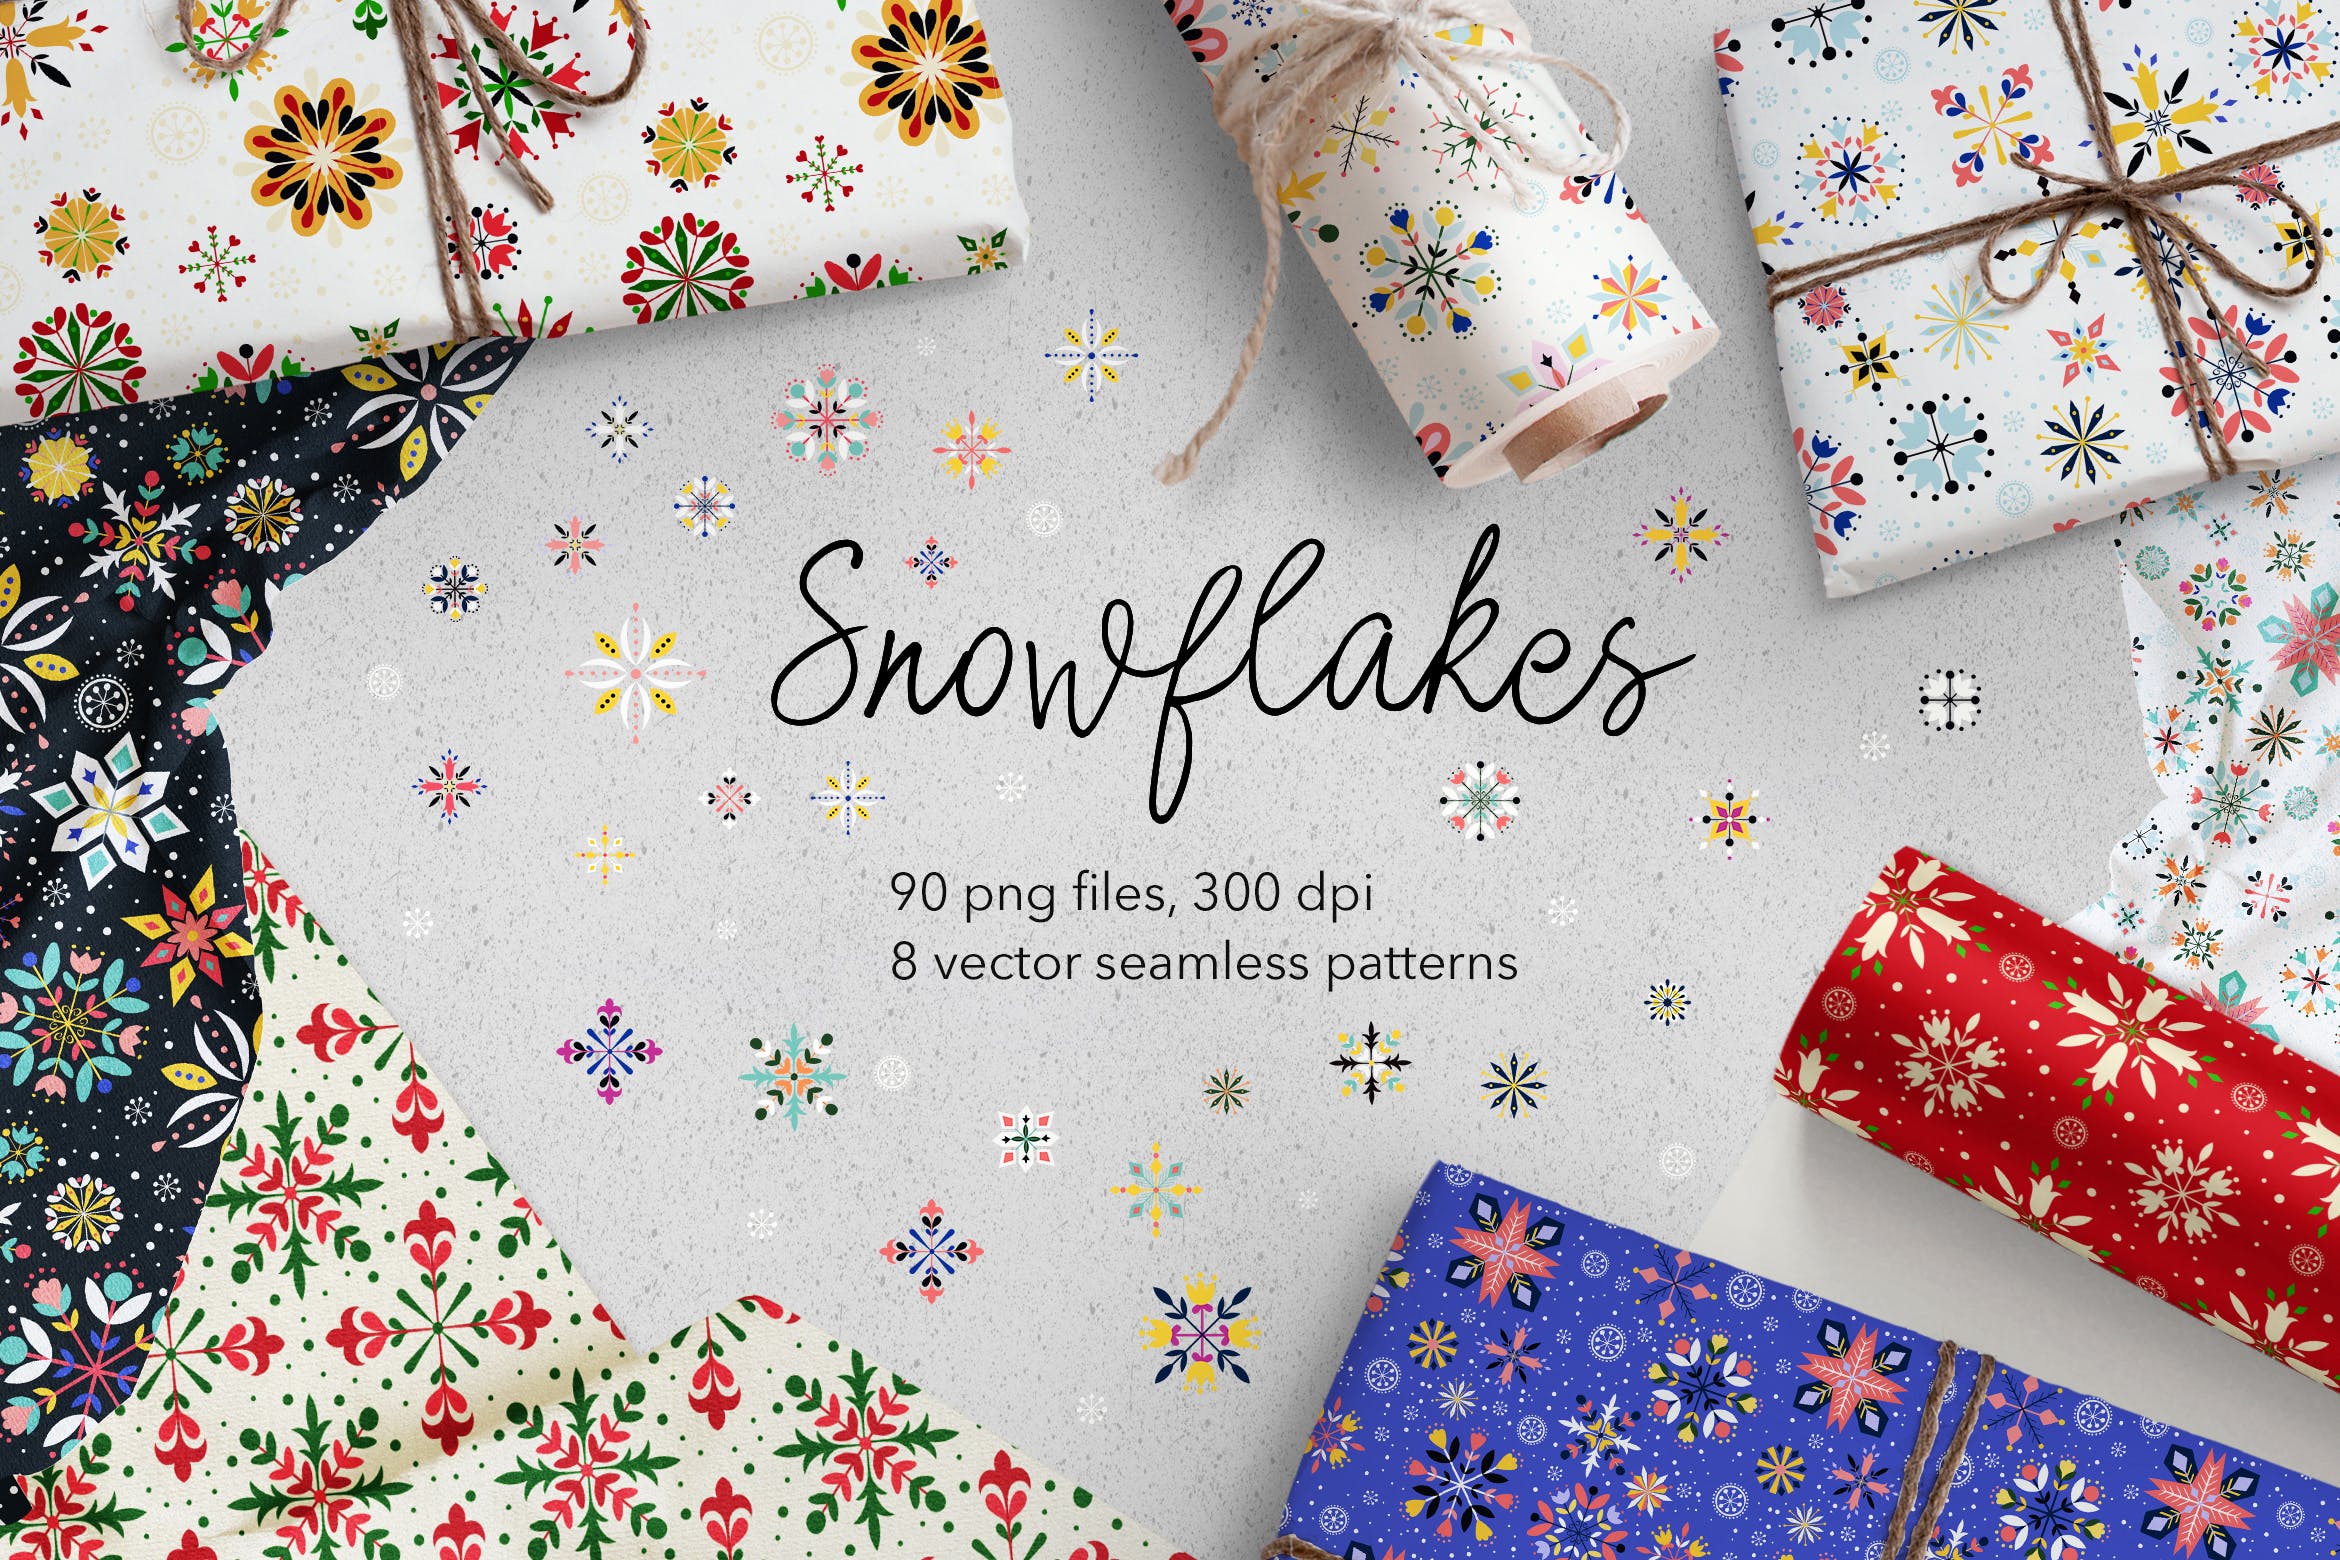 彩色手绘雪花图案纹样节日背景素材 Snowflakes插图